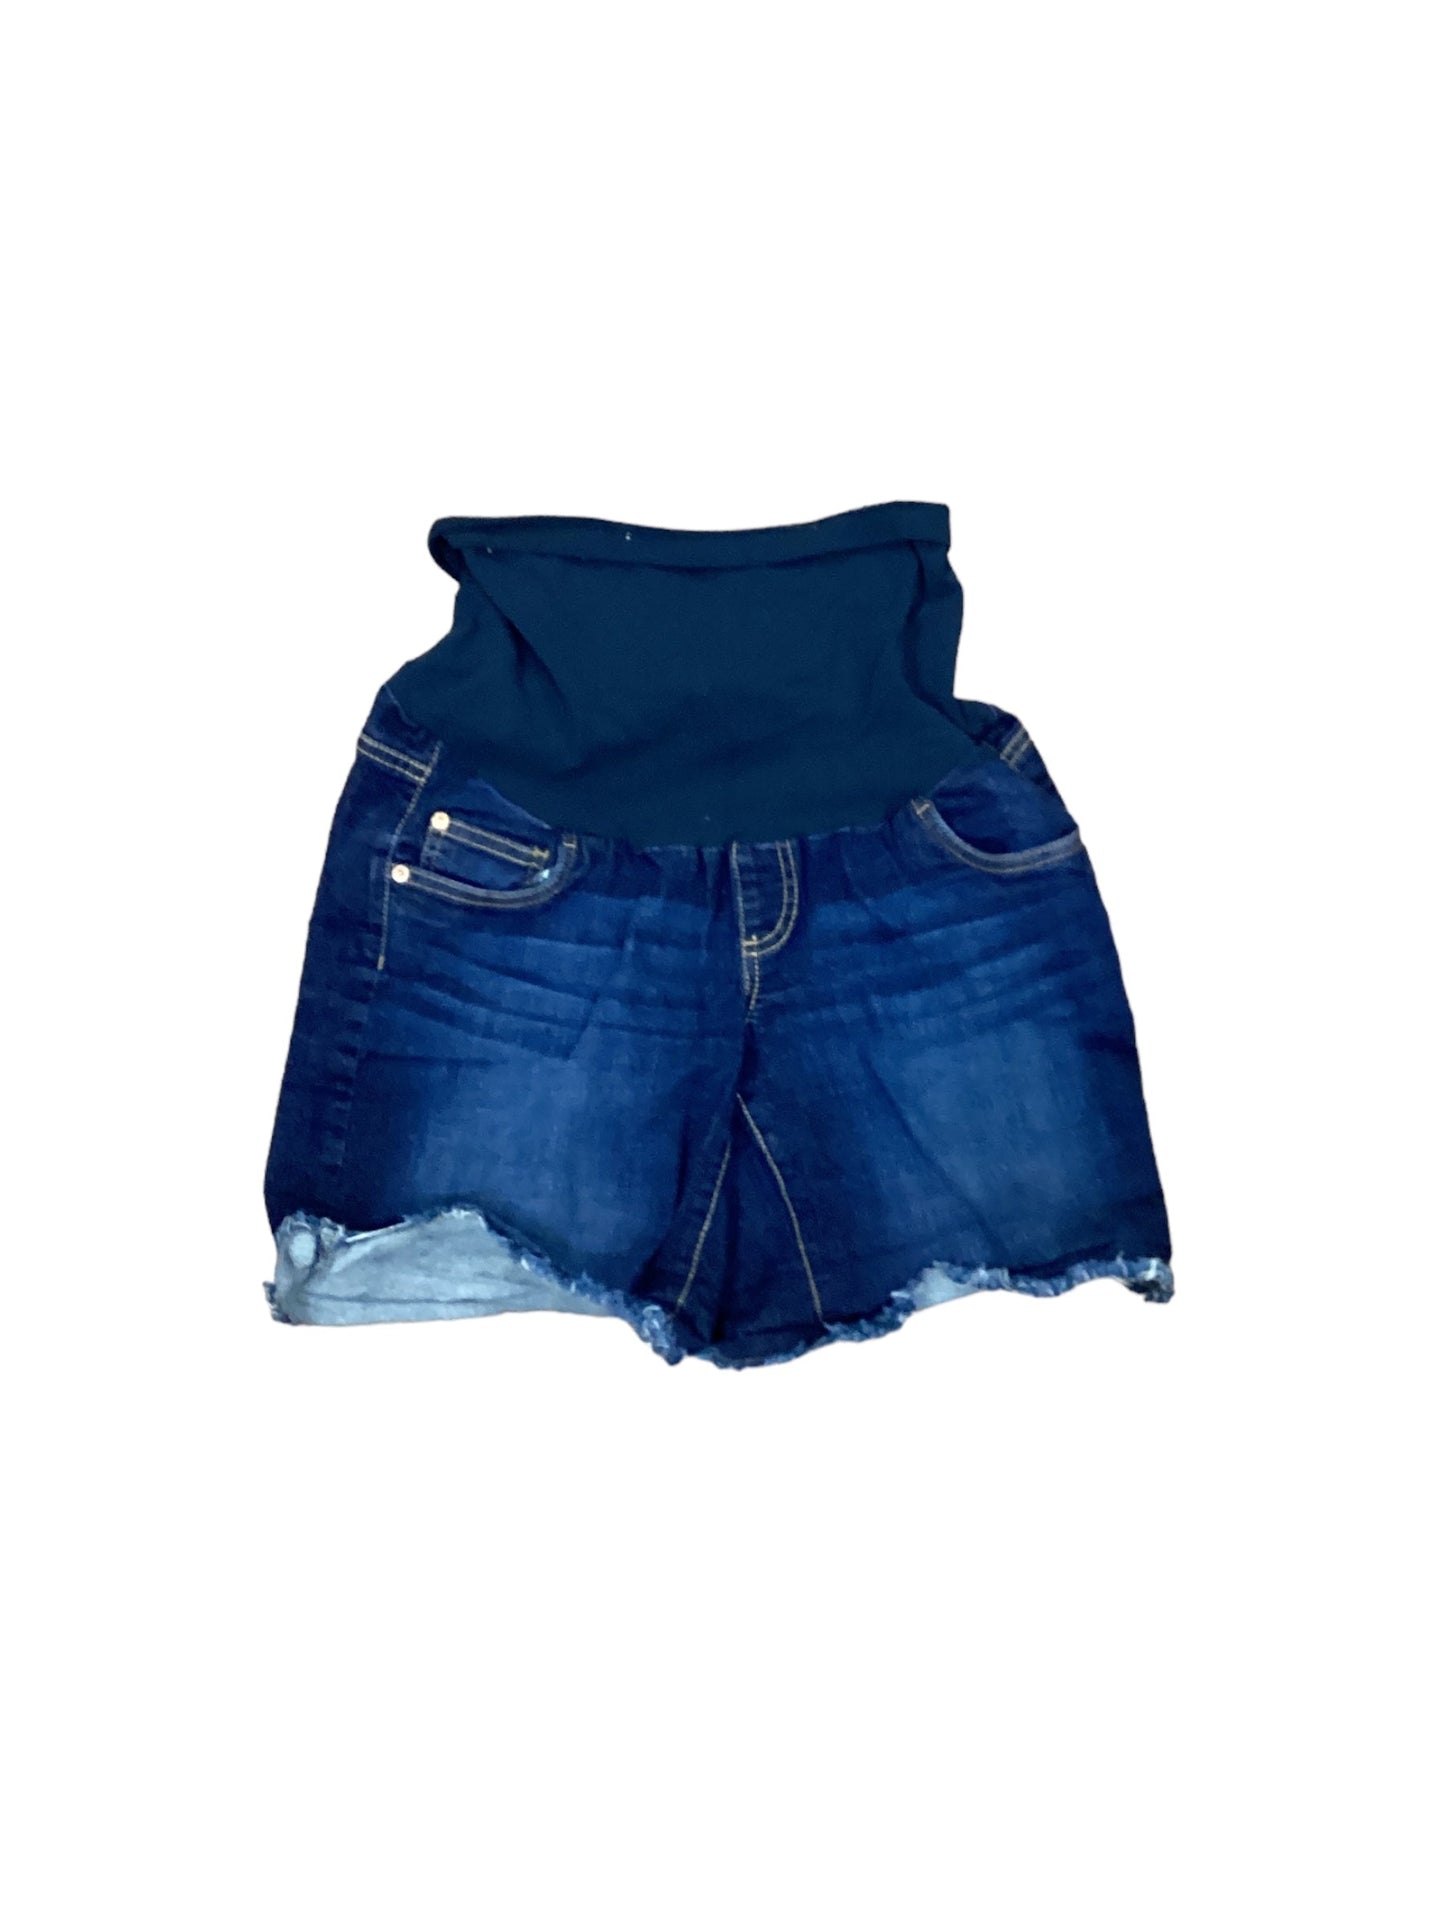 Blue Denim Shorts Indigo Blue, Size M